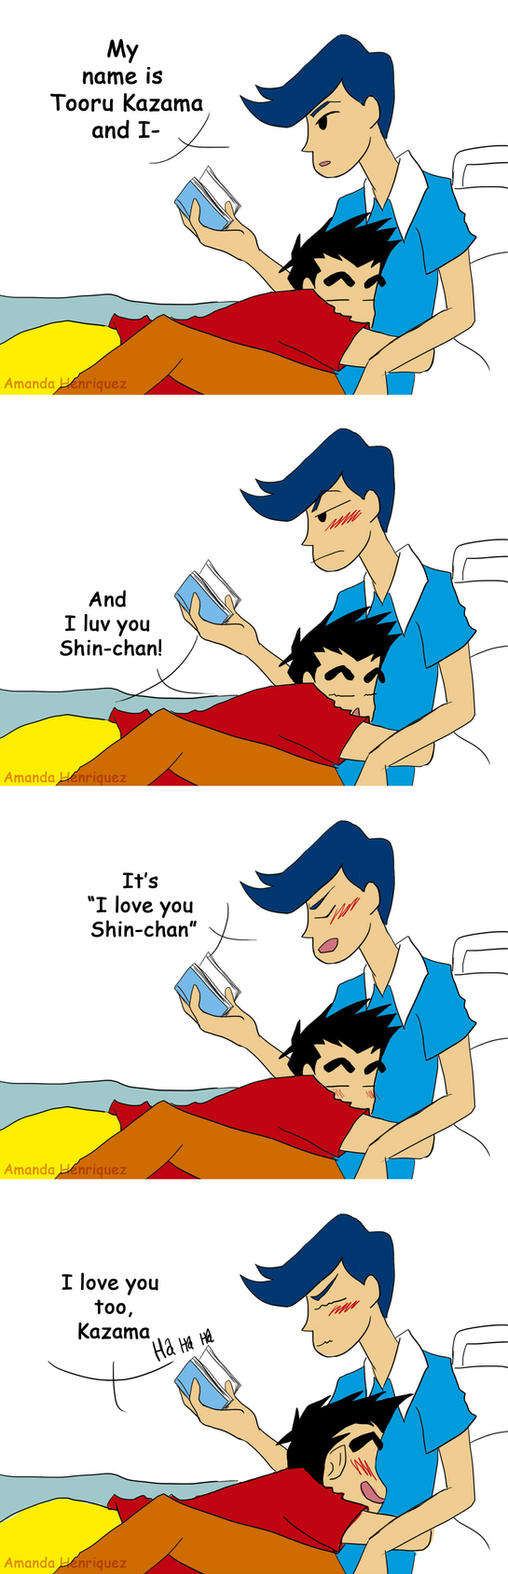 Shinkaza comic by AmandaHenriquez on DeviantArt